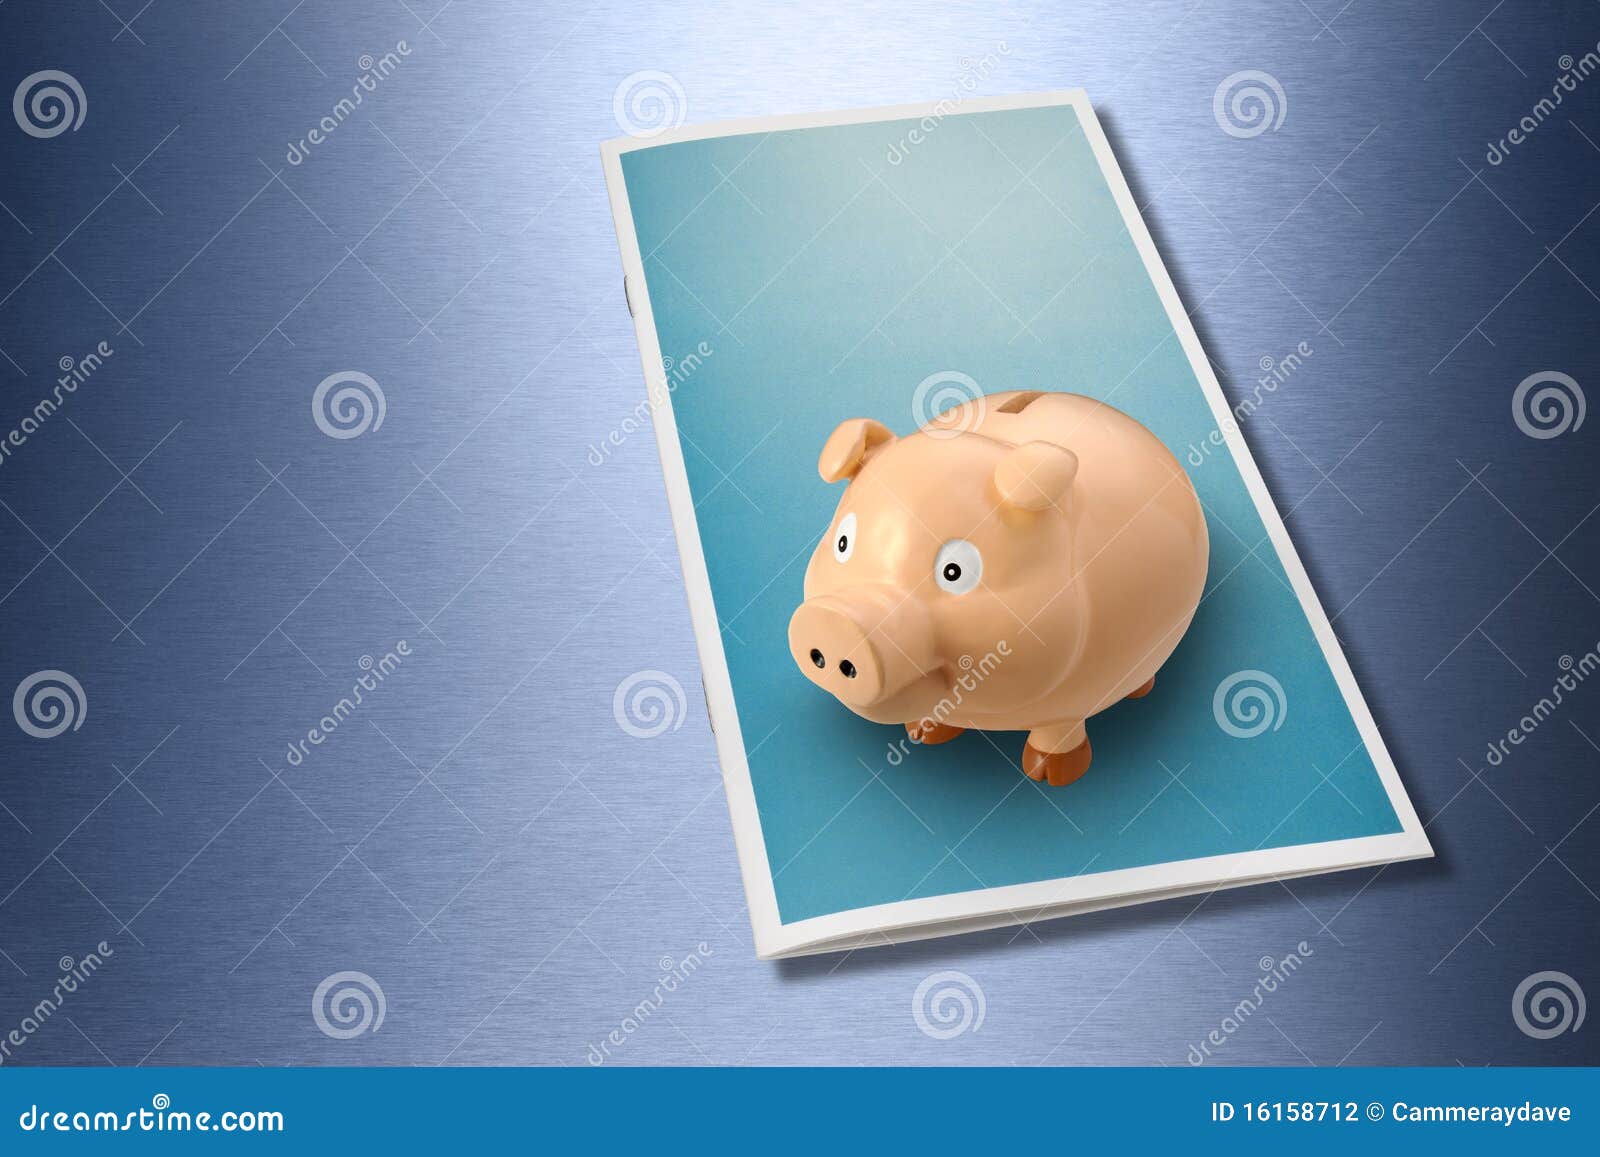 business wealth brochure piggybank